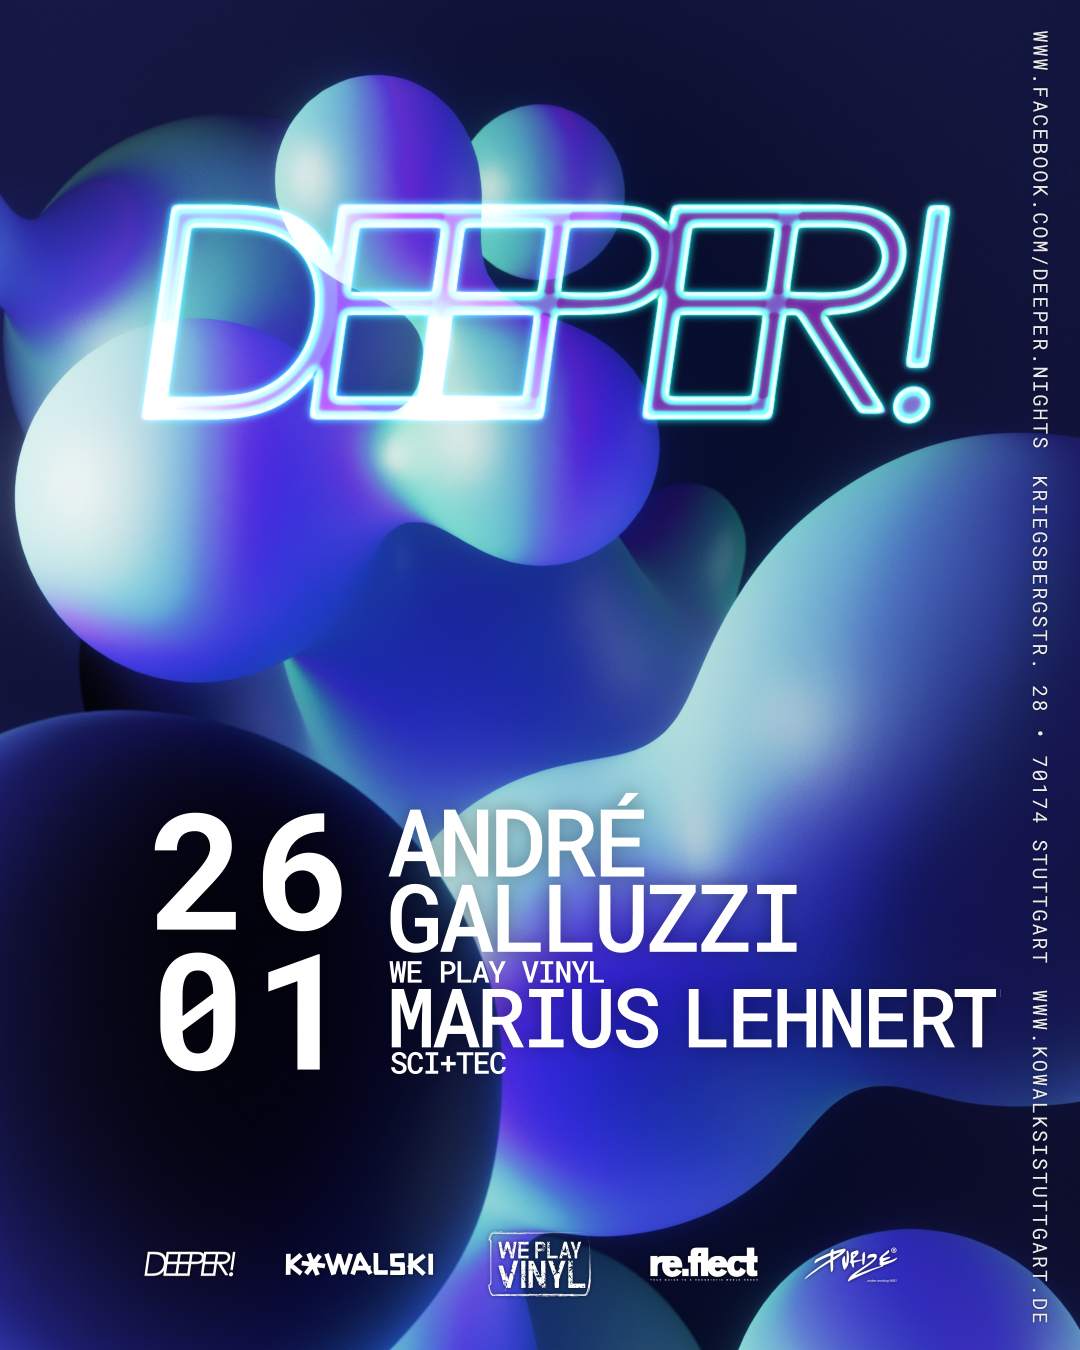 DEEPER! feiert großes Finale mit André Galluzzi & Marius Lehnert - Página frontal